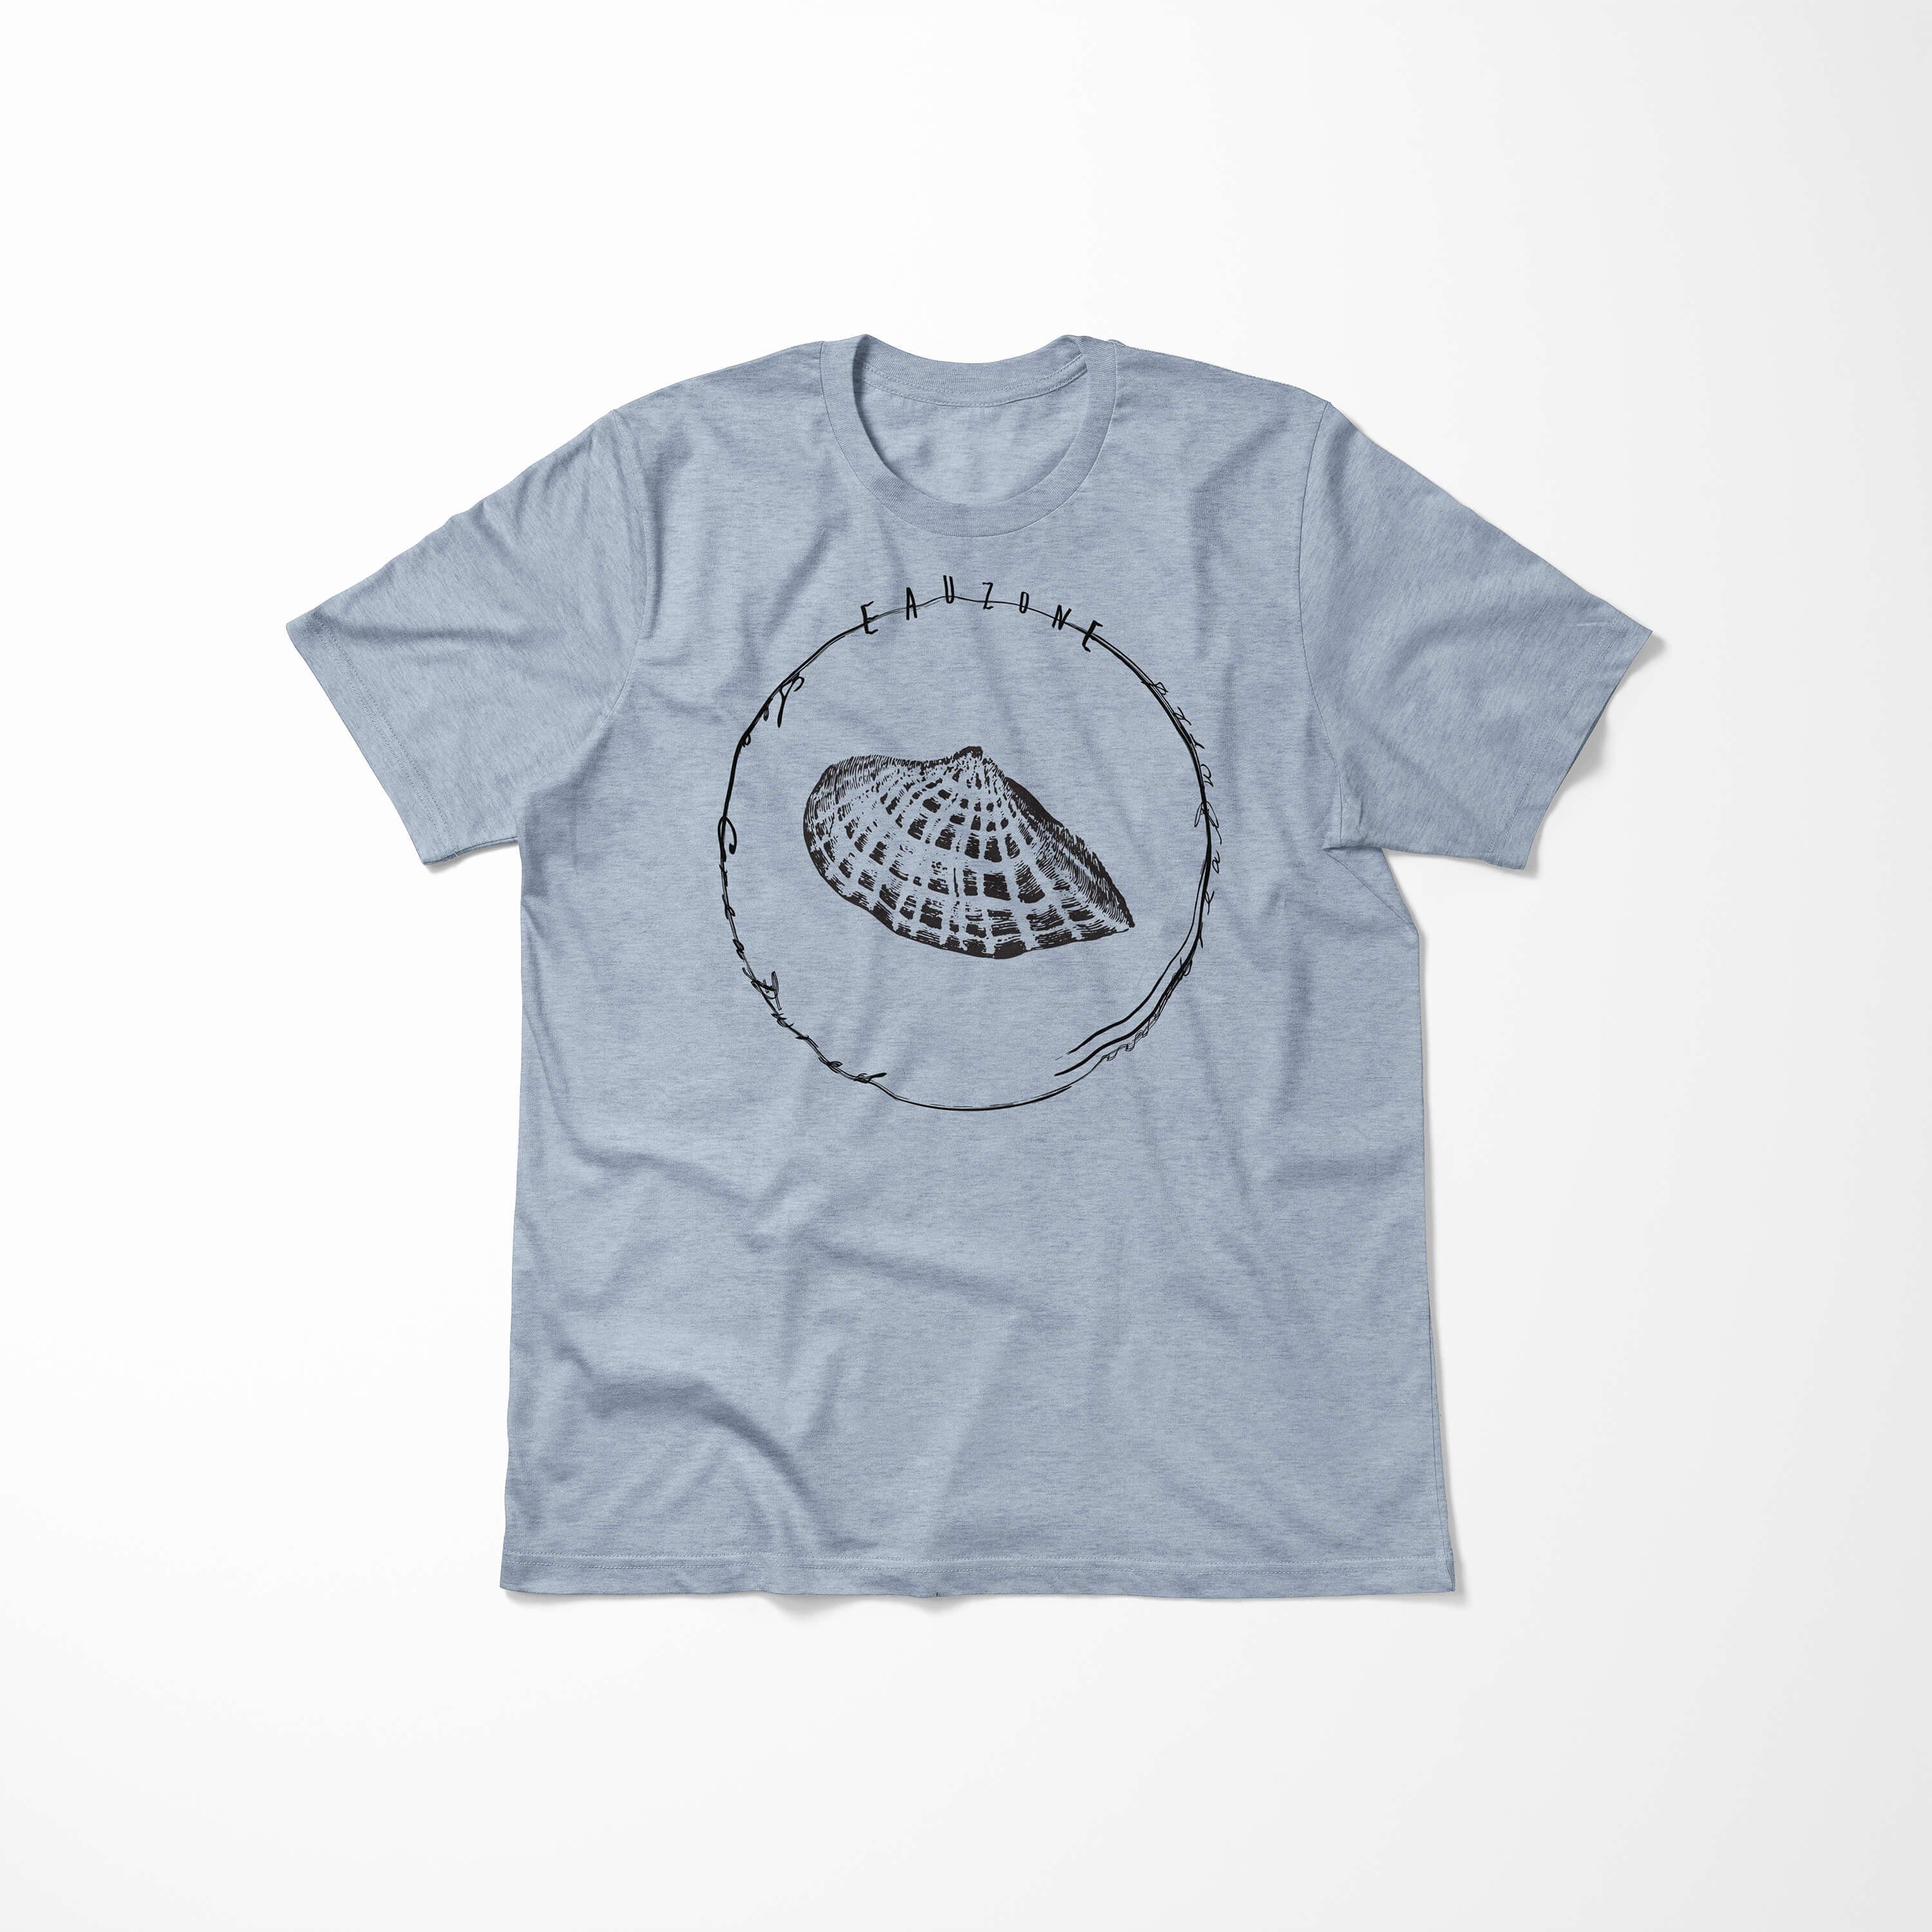 Sinus Art Sea Sea Creatures, Serie: Tiefsee Stonewash T-Shirt und Denim 033 Fische Schnitt - / T-Shirt feine sportlicher Struktur